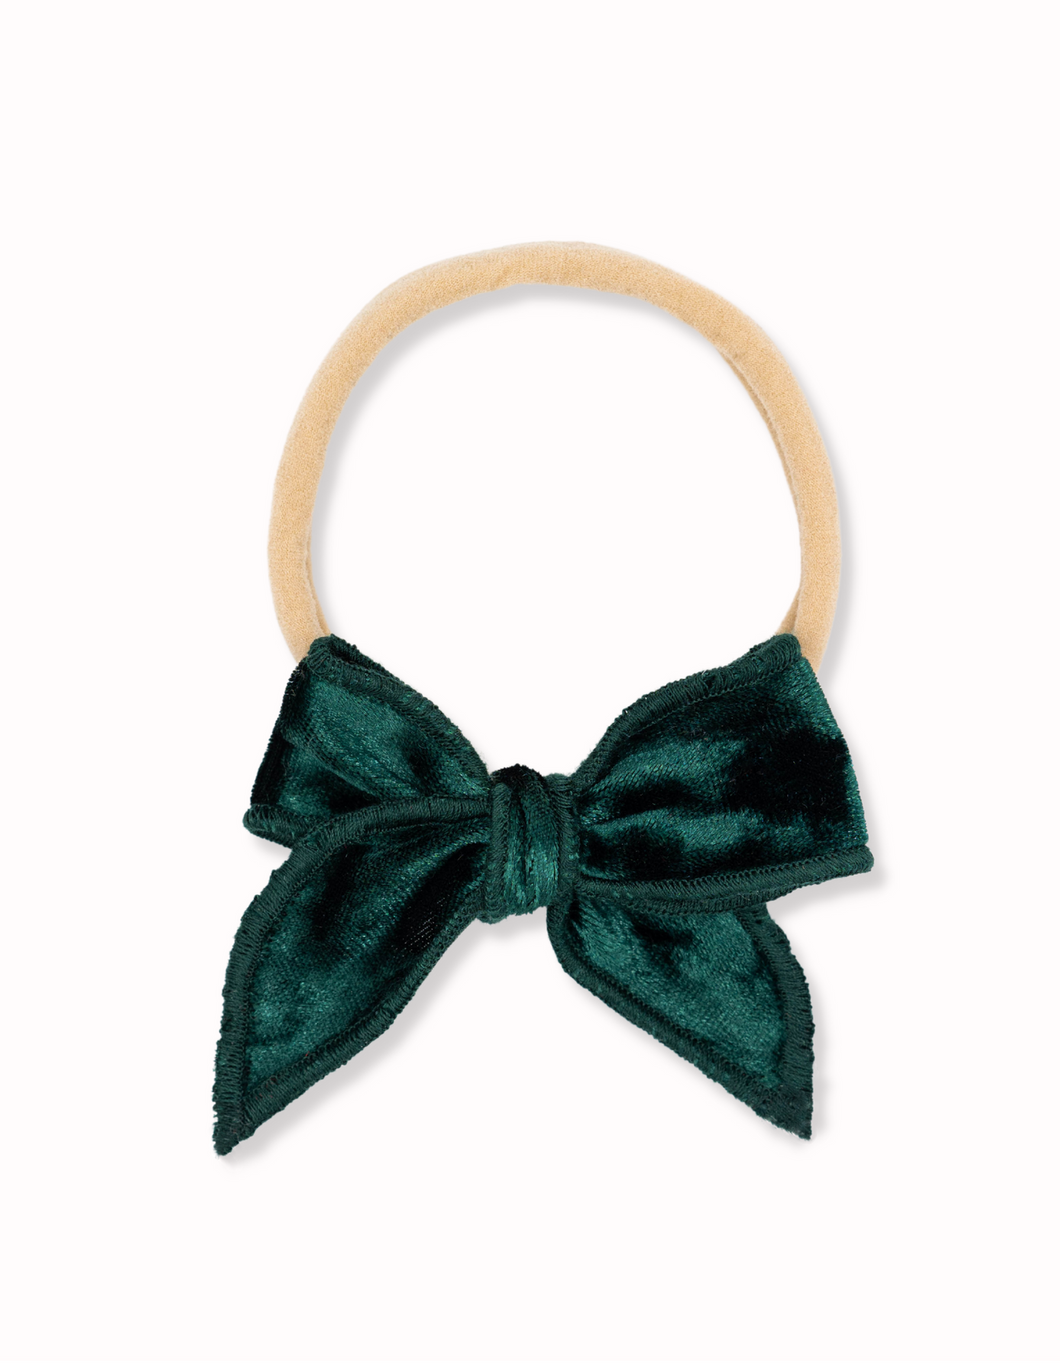 Emerald Baby Bow Headband